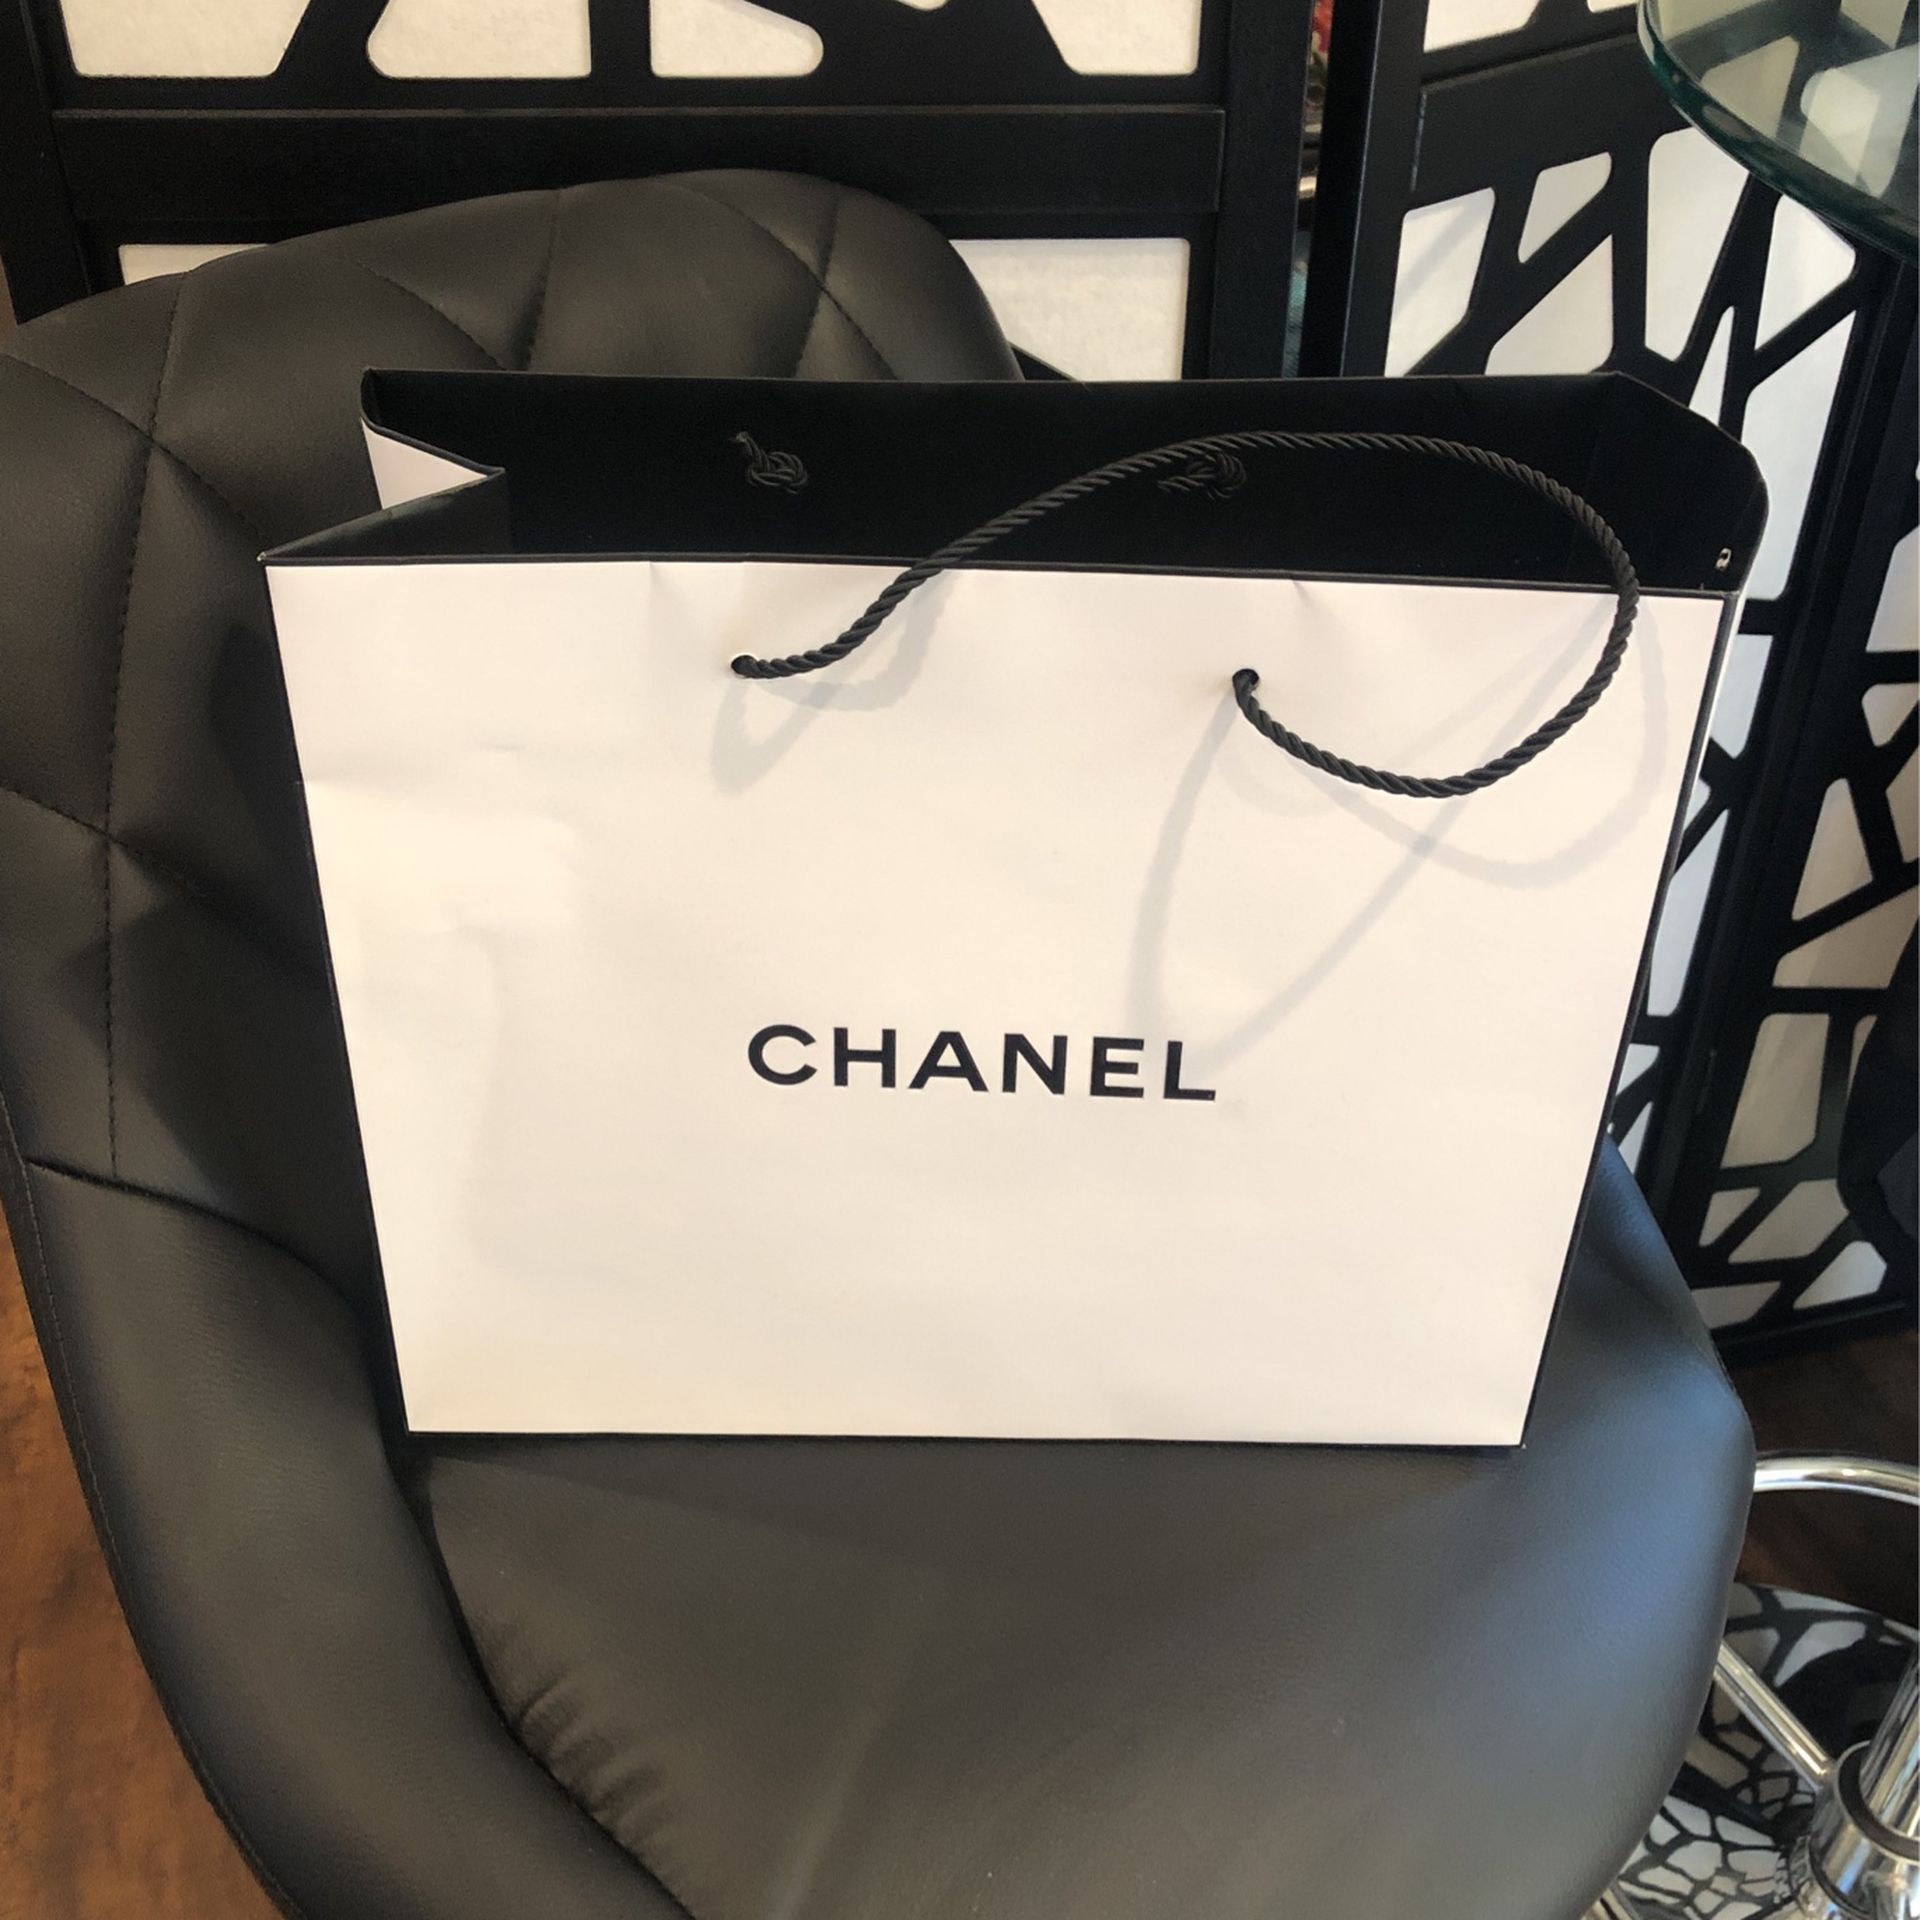 Chanel Bag $20